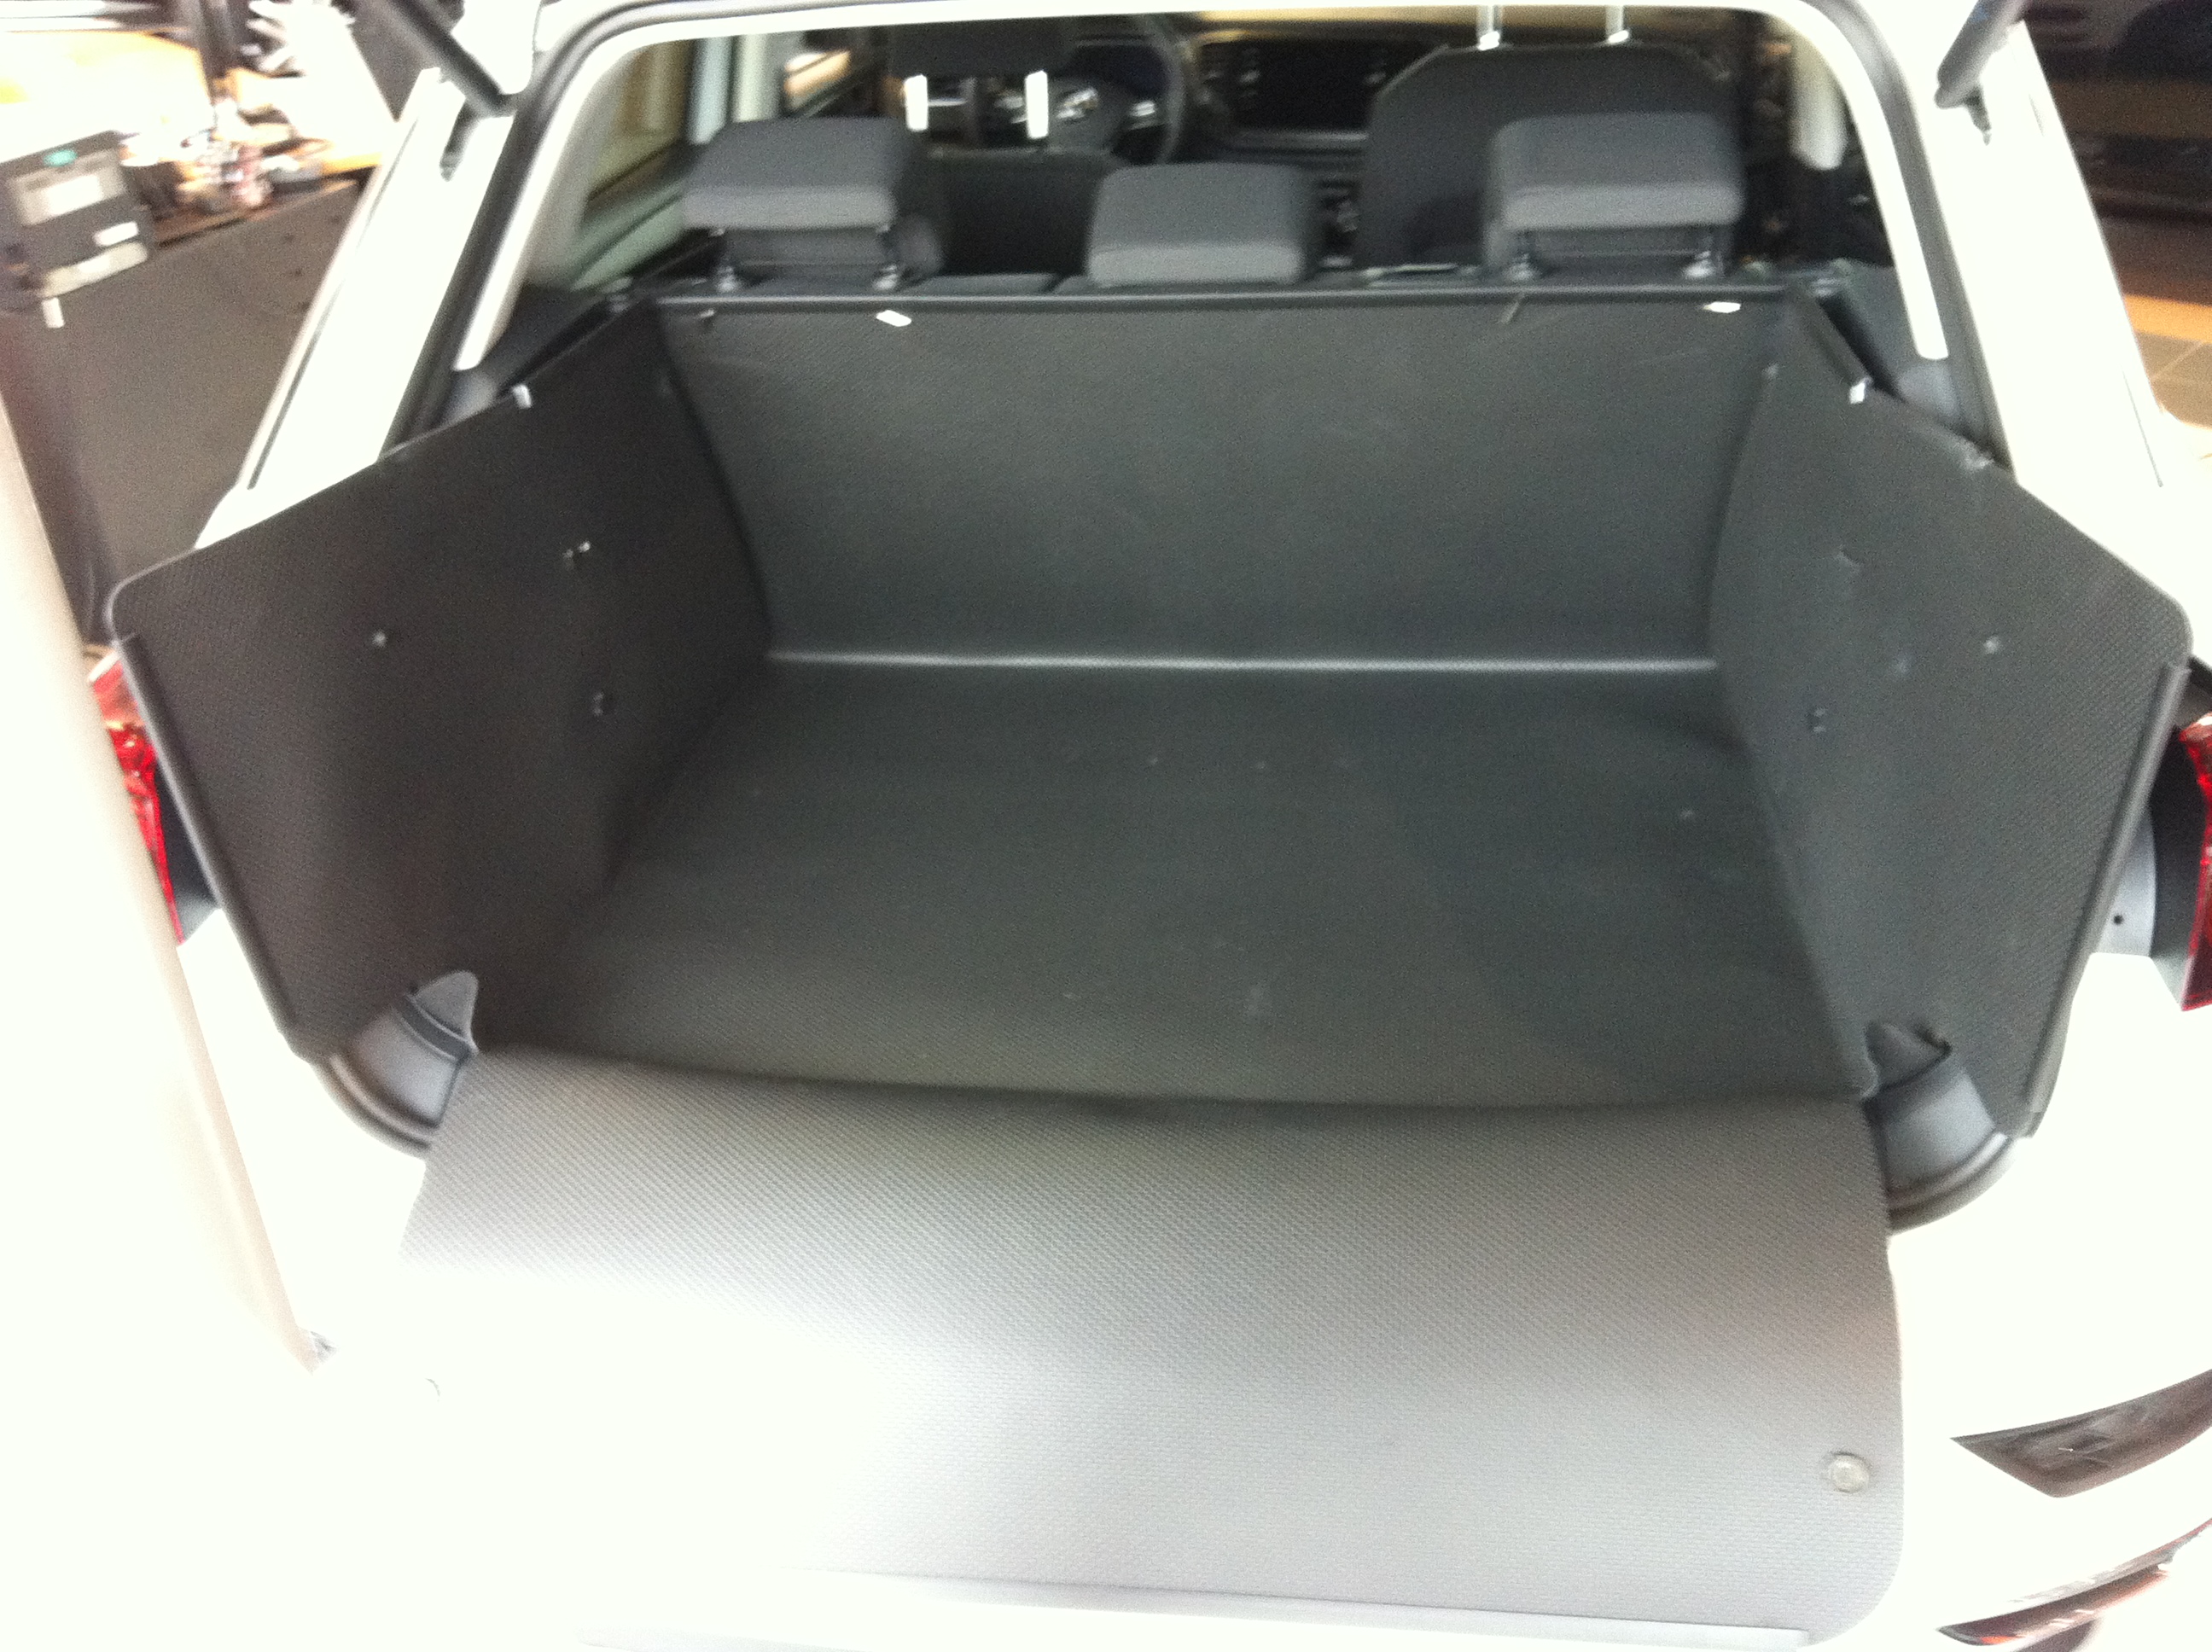 Kofferraumwanne XTR für VW T-Roc, Autozubehör-Konfigurator